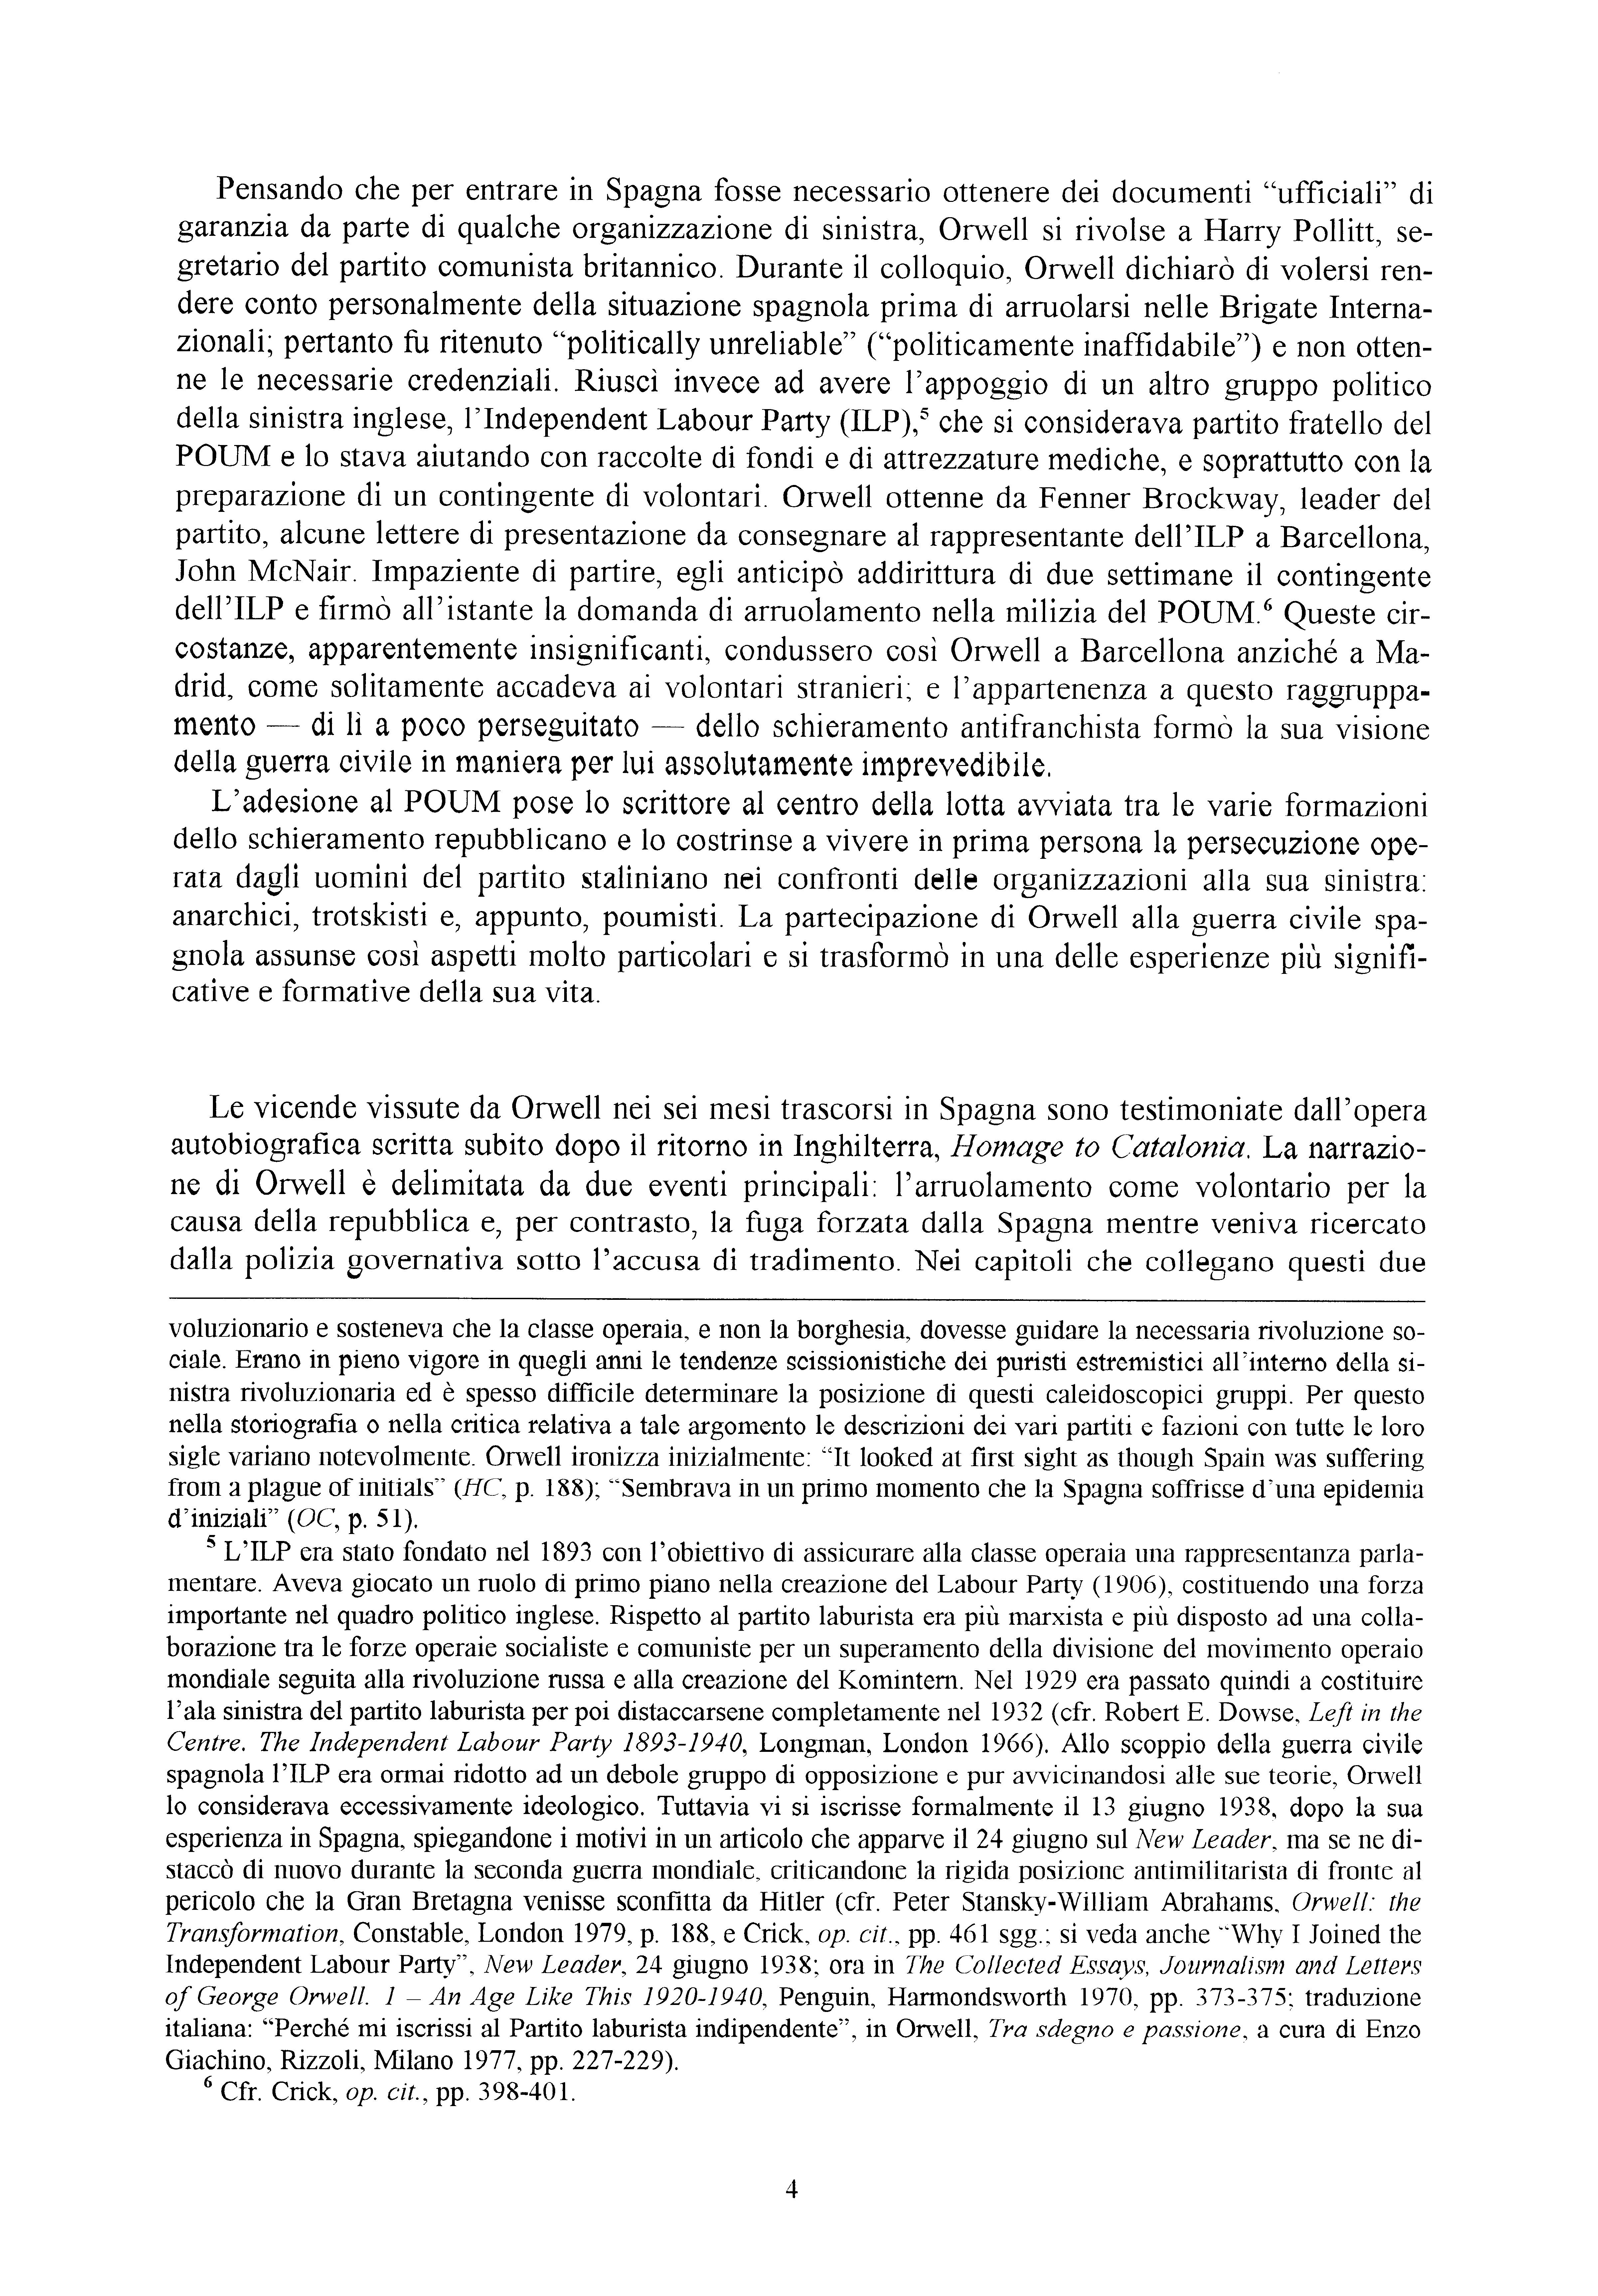 Quaderno Pietro Tresso n. 13 - pag. 5